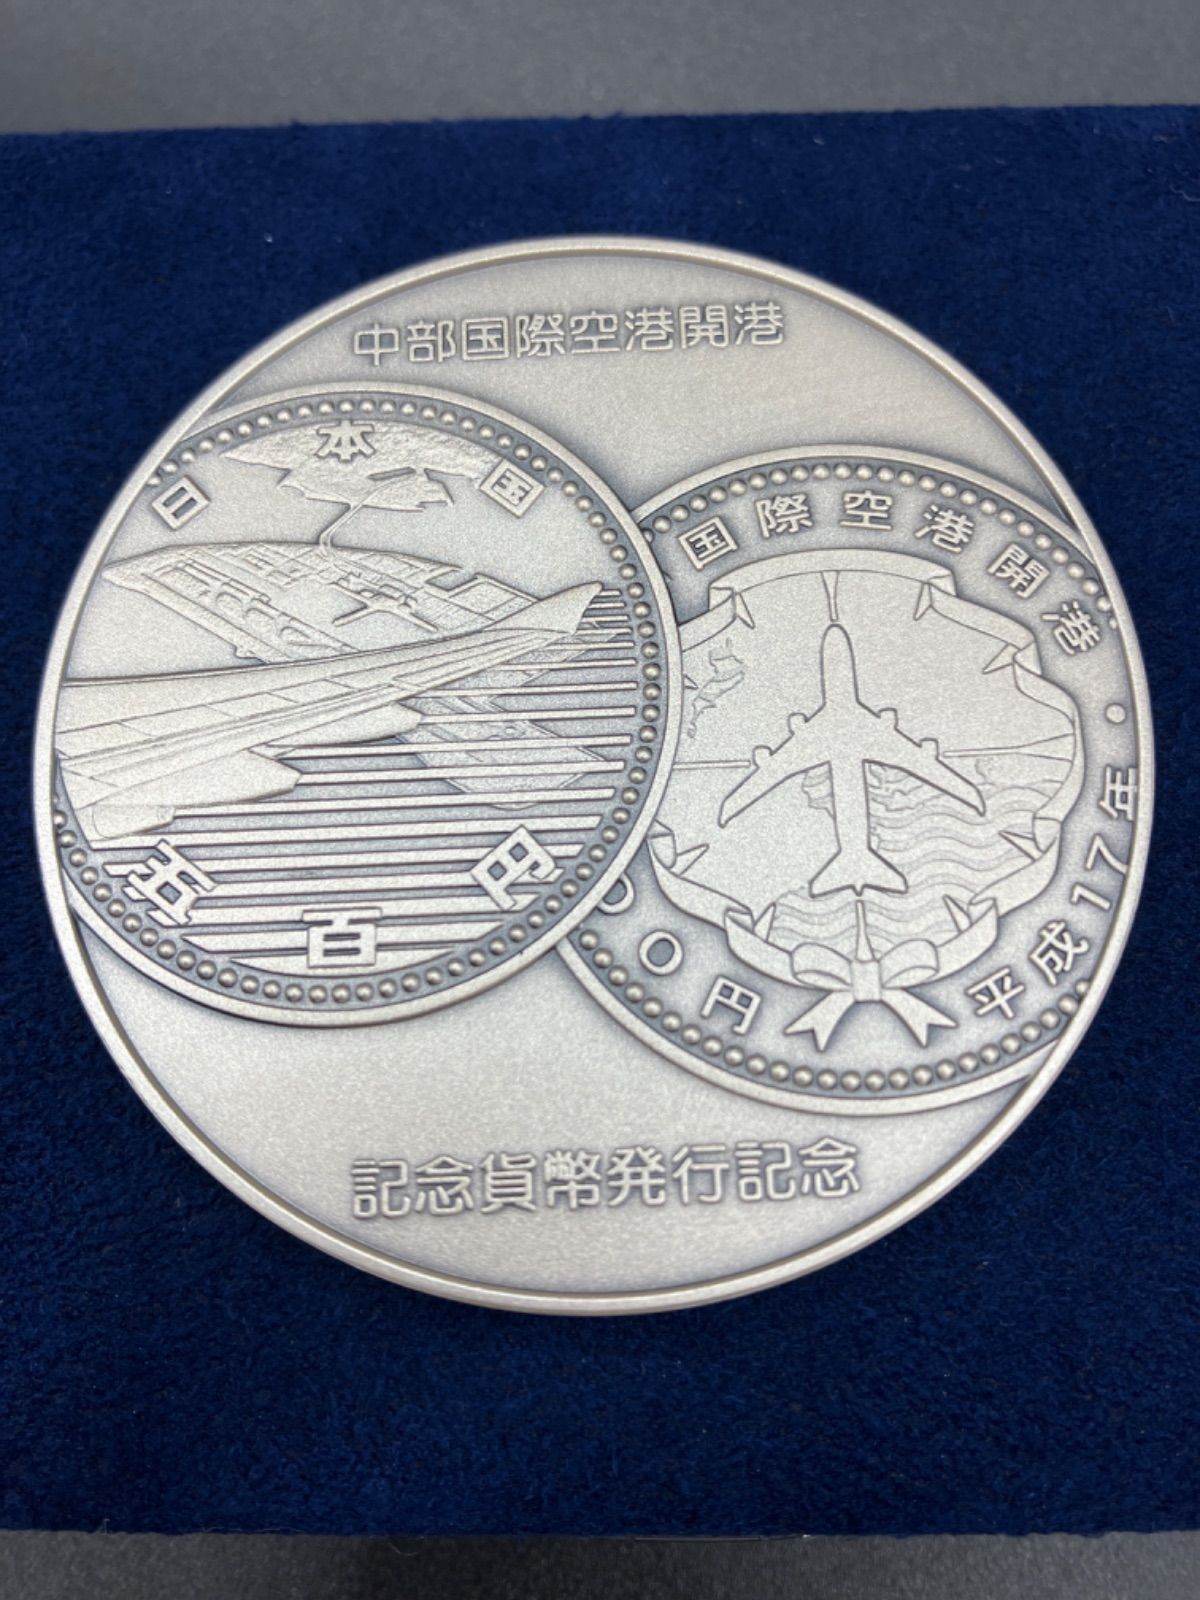 純銀メダル 記念メダル「関西国際空港開港記念貨幣、発行記念メダル ...